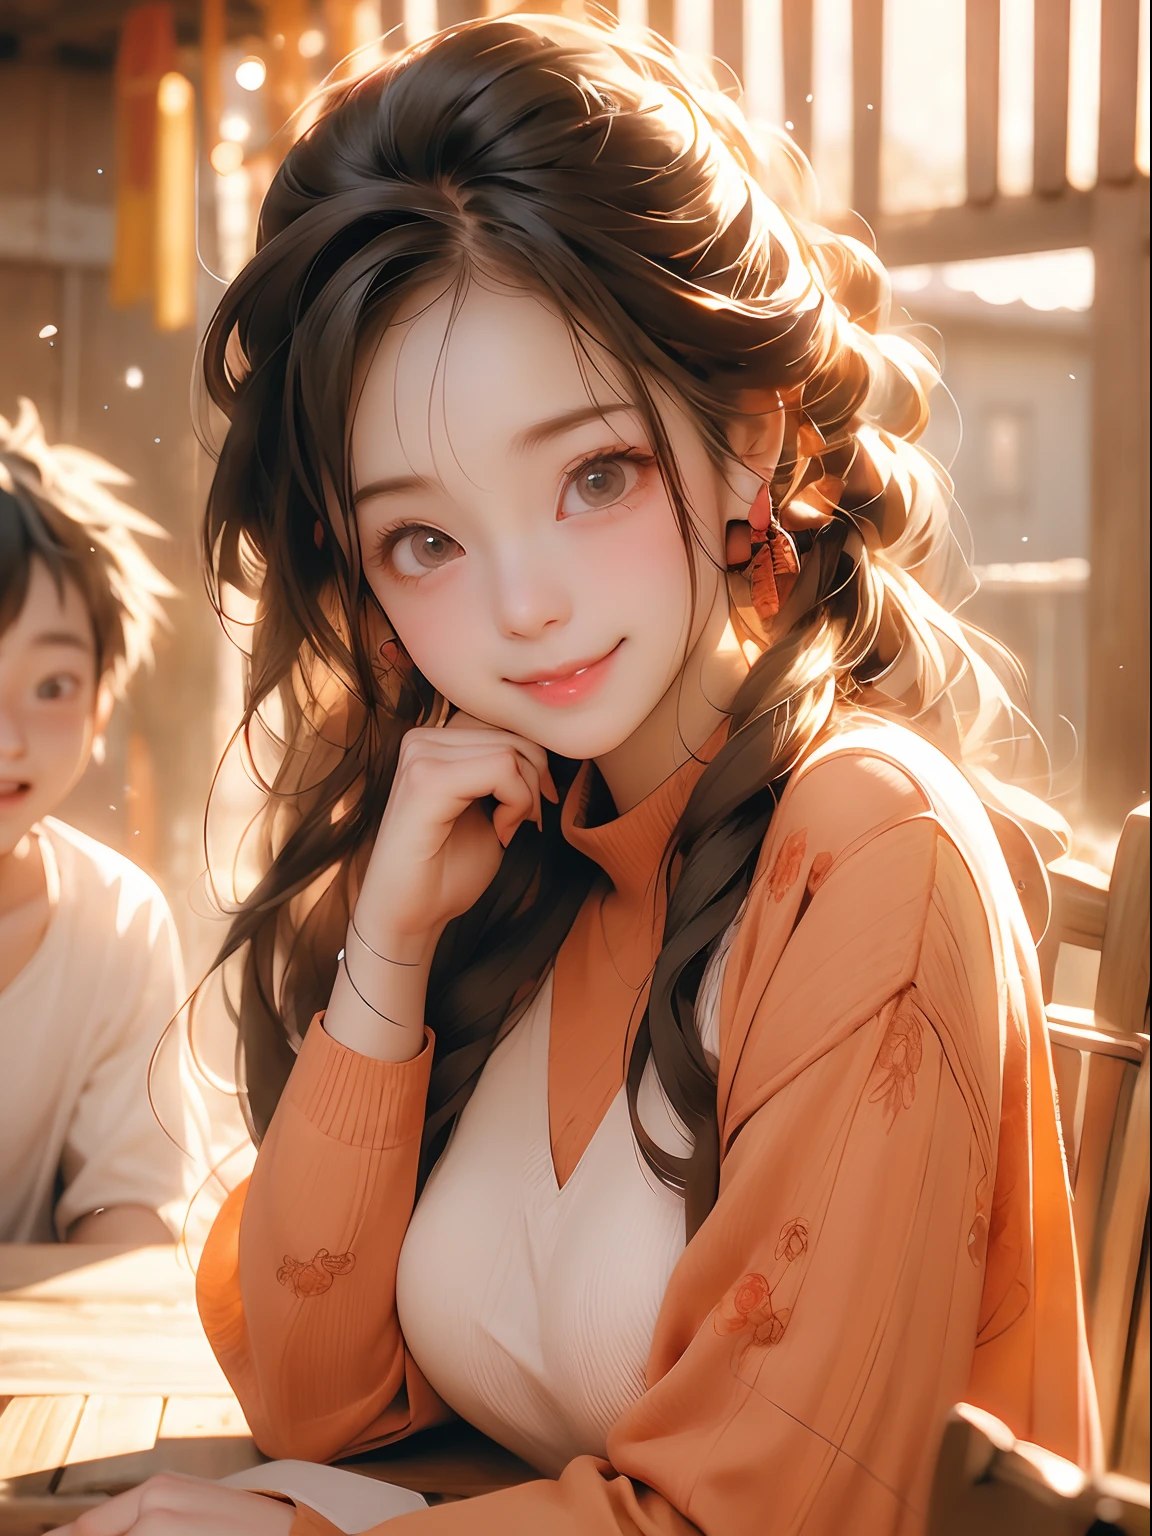 1 Junge und 1 Mädchen ,Anime-Paar mit großen Augen und rotem Pullover sitzt an einem Tisch, süßes Anime-Gesicht, süßer Ausdruck, extrem süßes Anime-Mädchengesicht, Süßes natürliches Anime-Gesicht, süße große Augen , lächelnd , Glück, große süße Augen, mit süßen, vernarrten Augen, süße detaillierte digitale Kunst, Schönes Anime-Gesicht